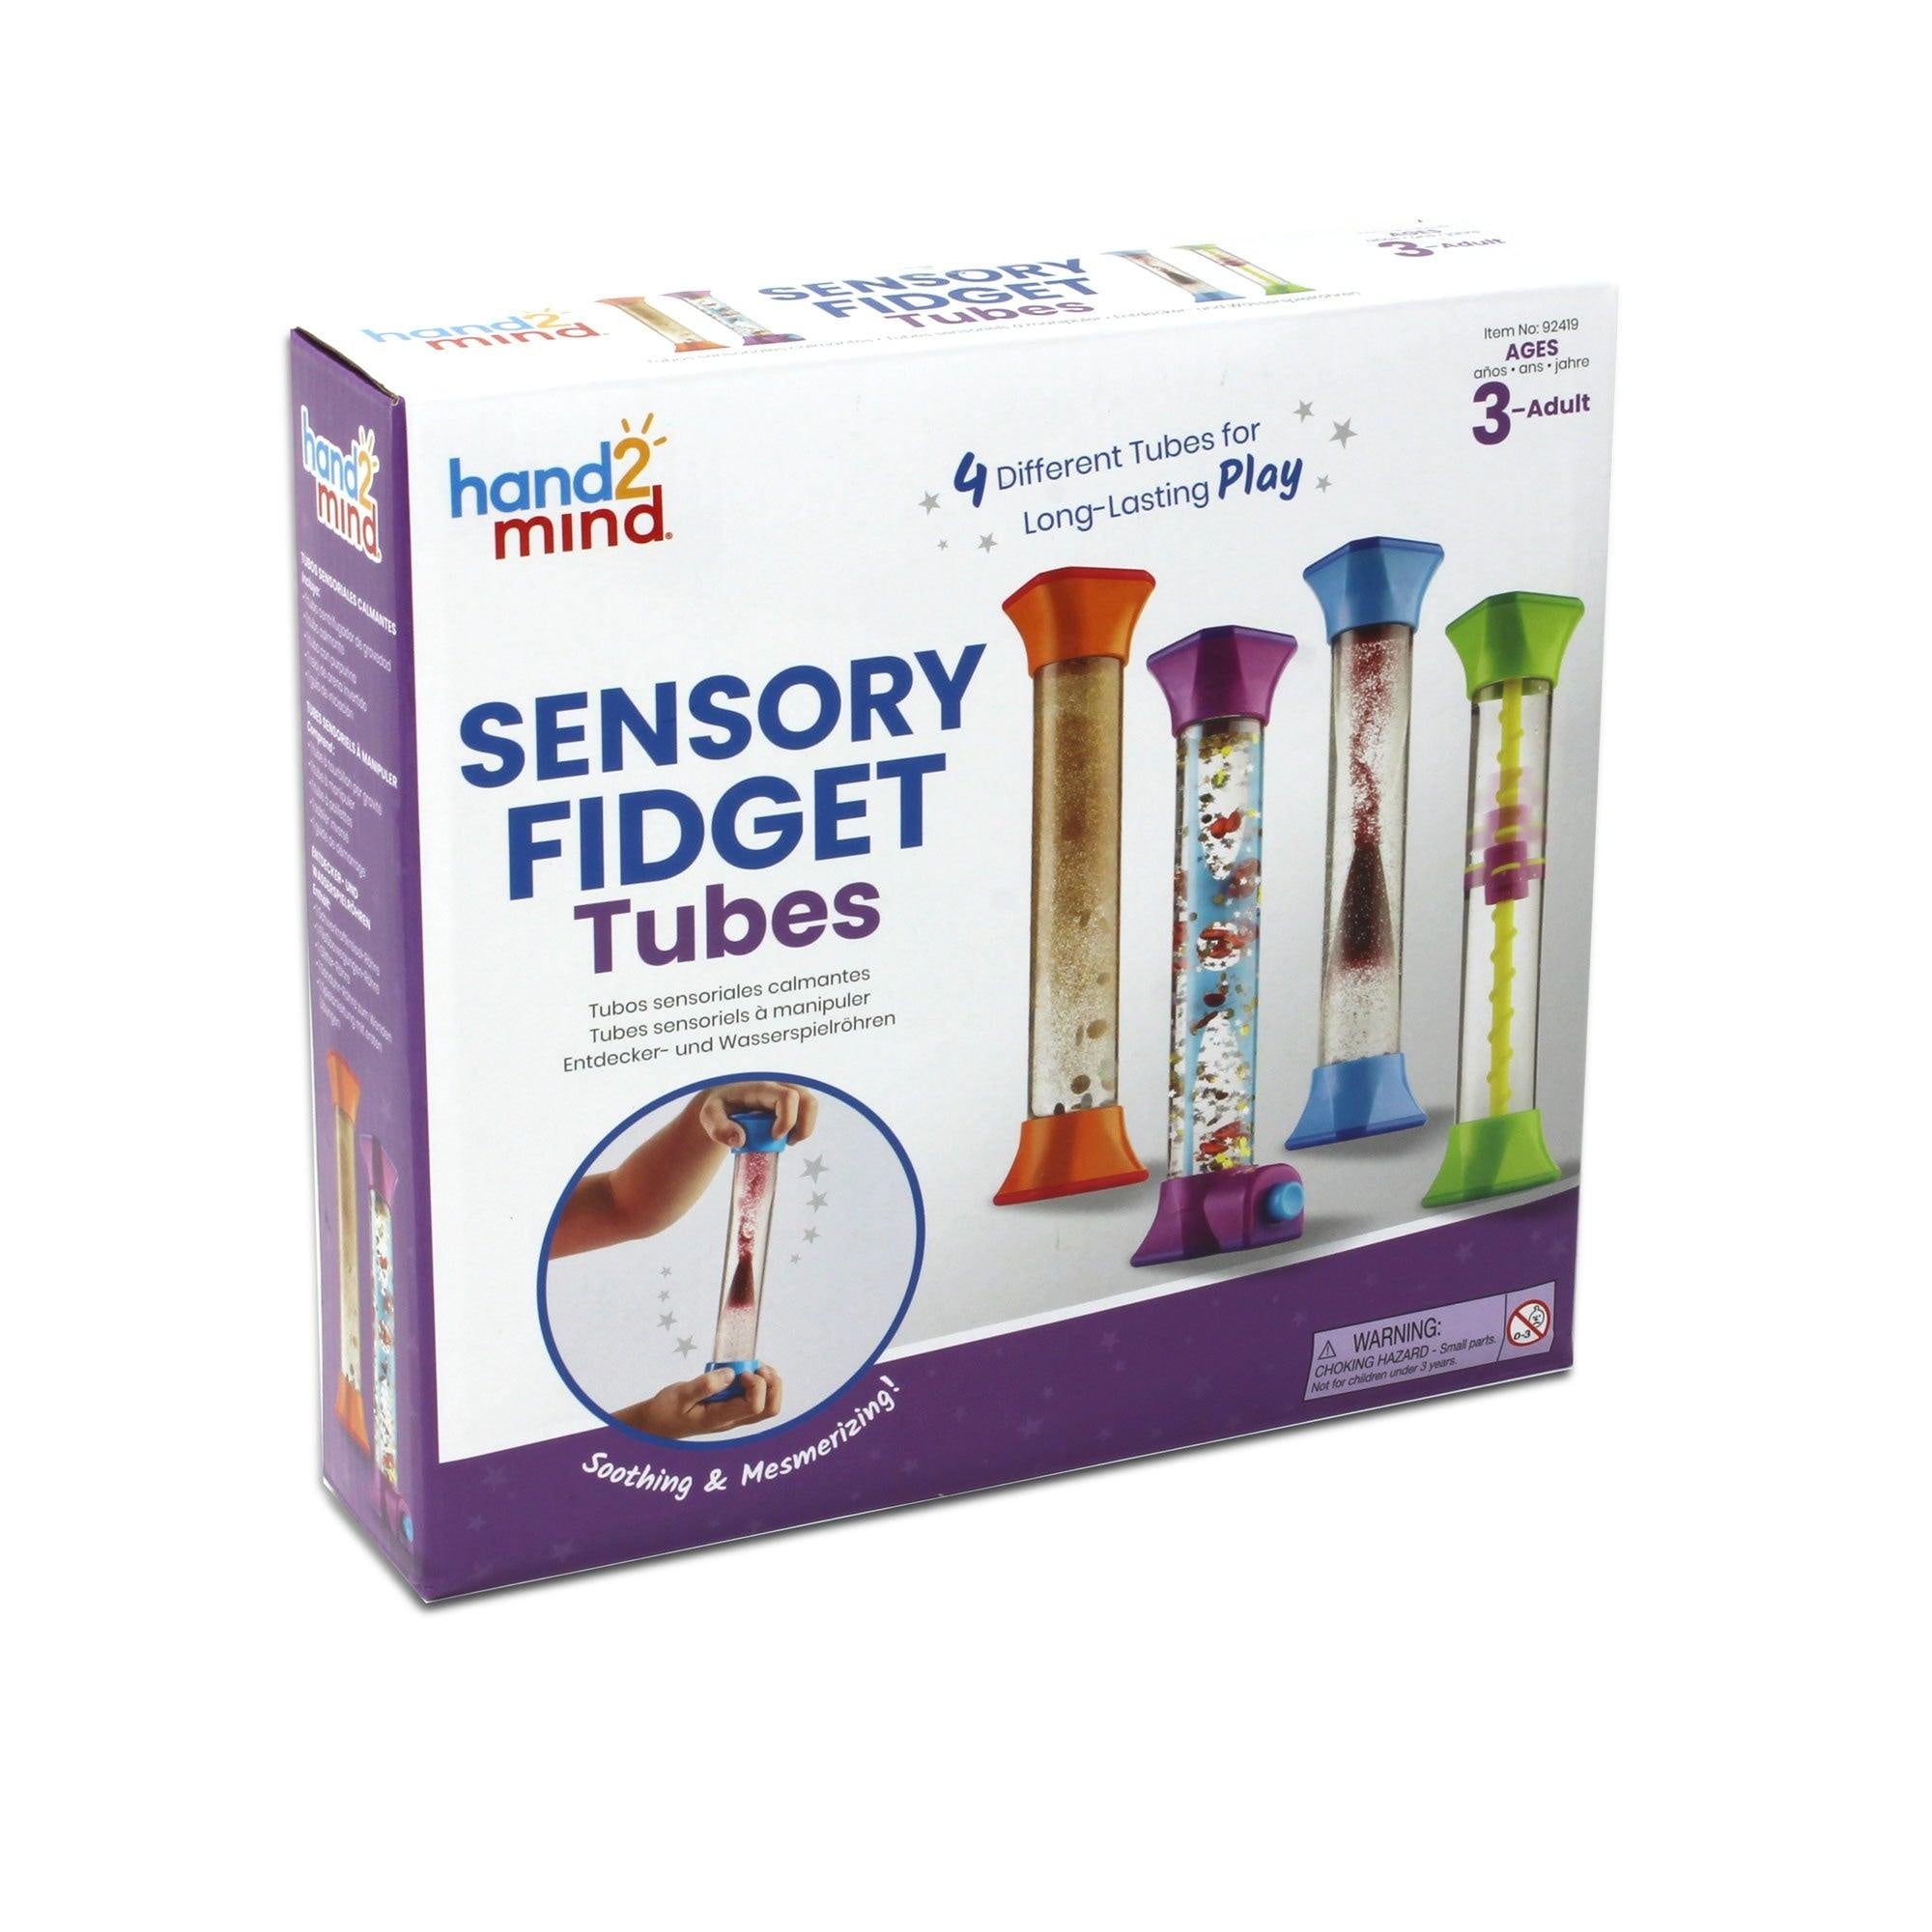 Sensorische fidget tubes